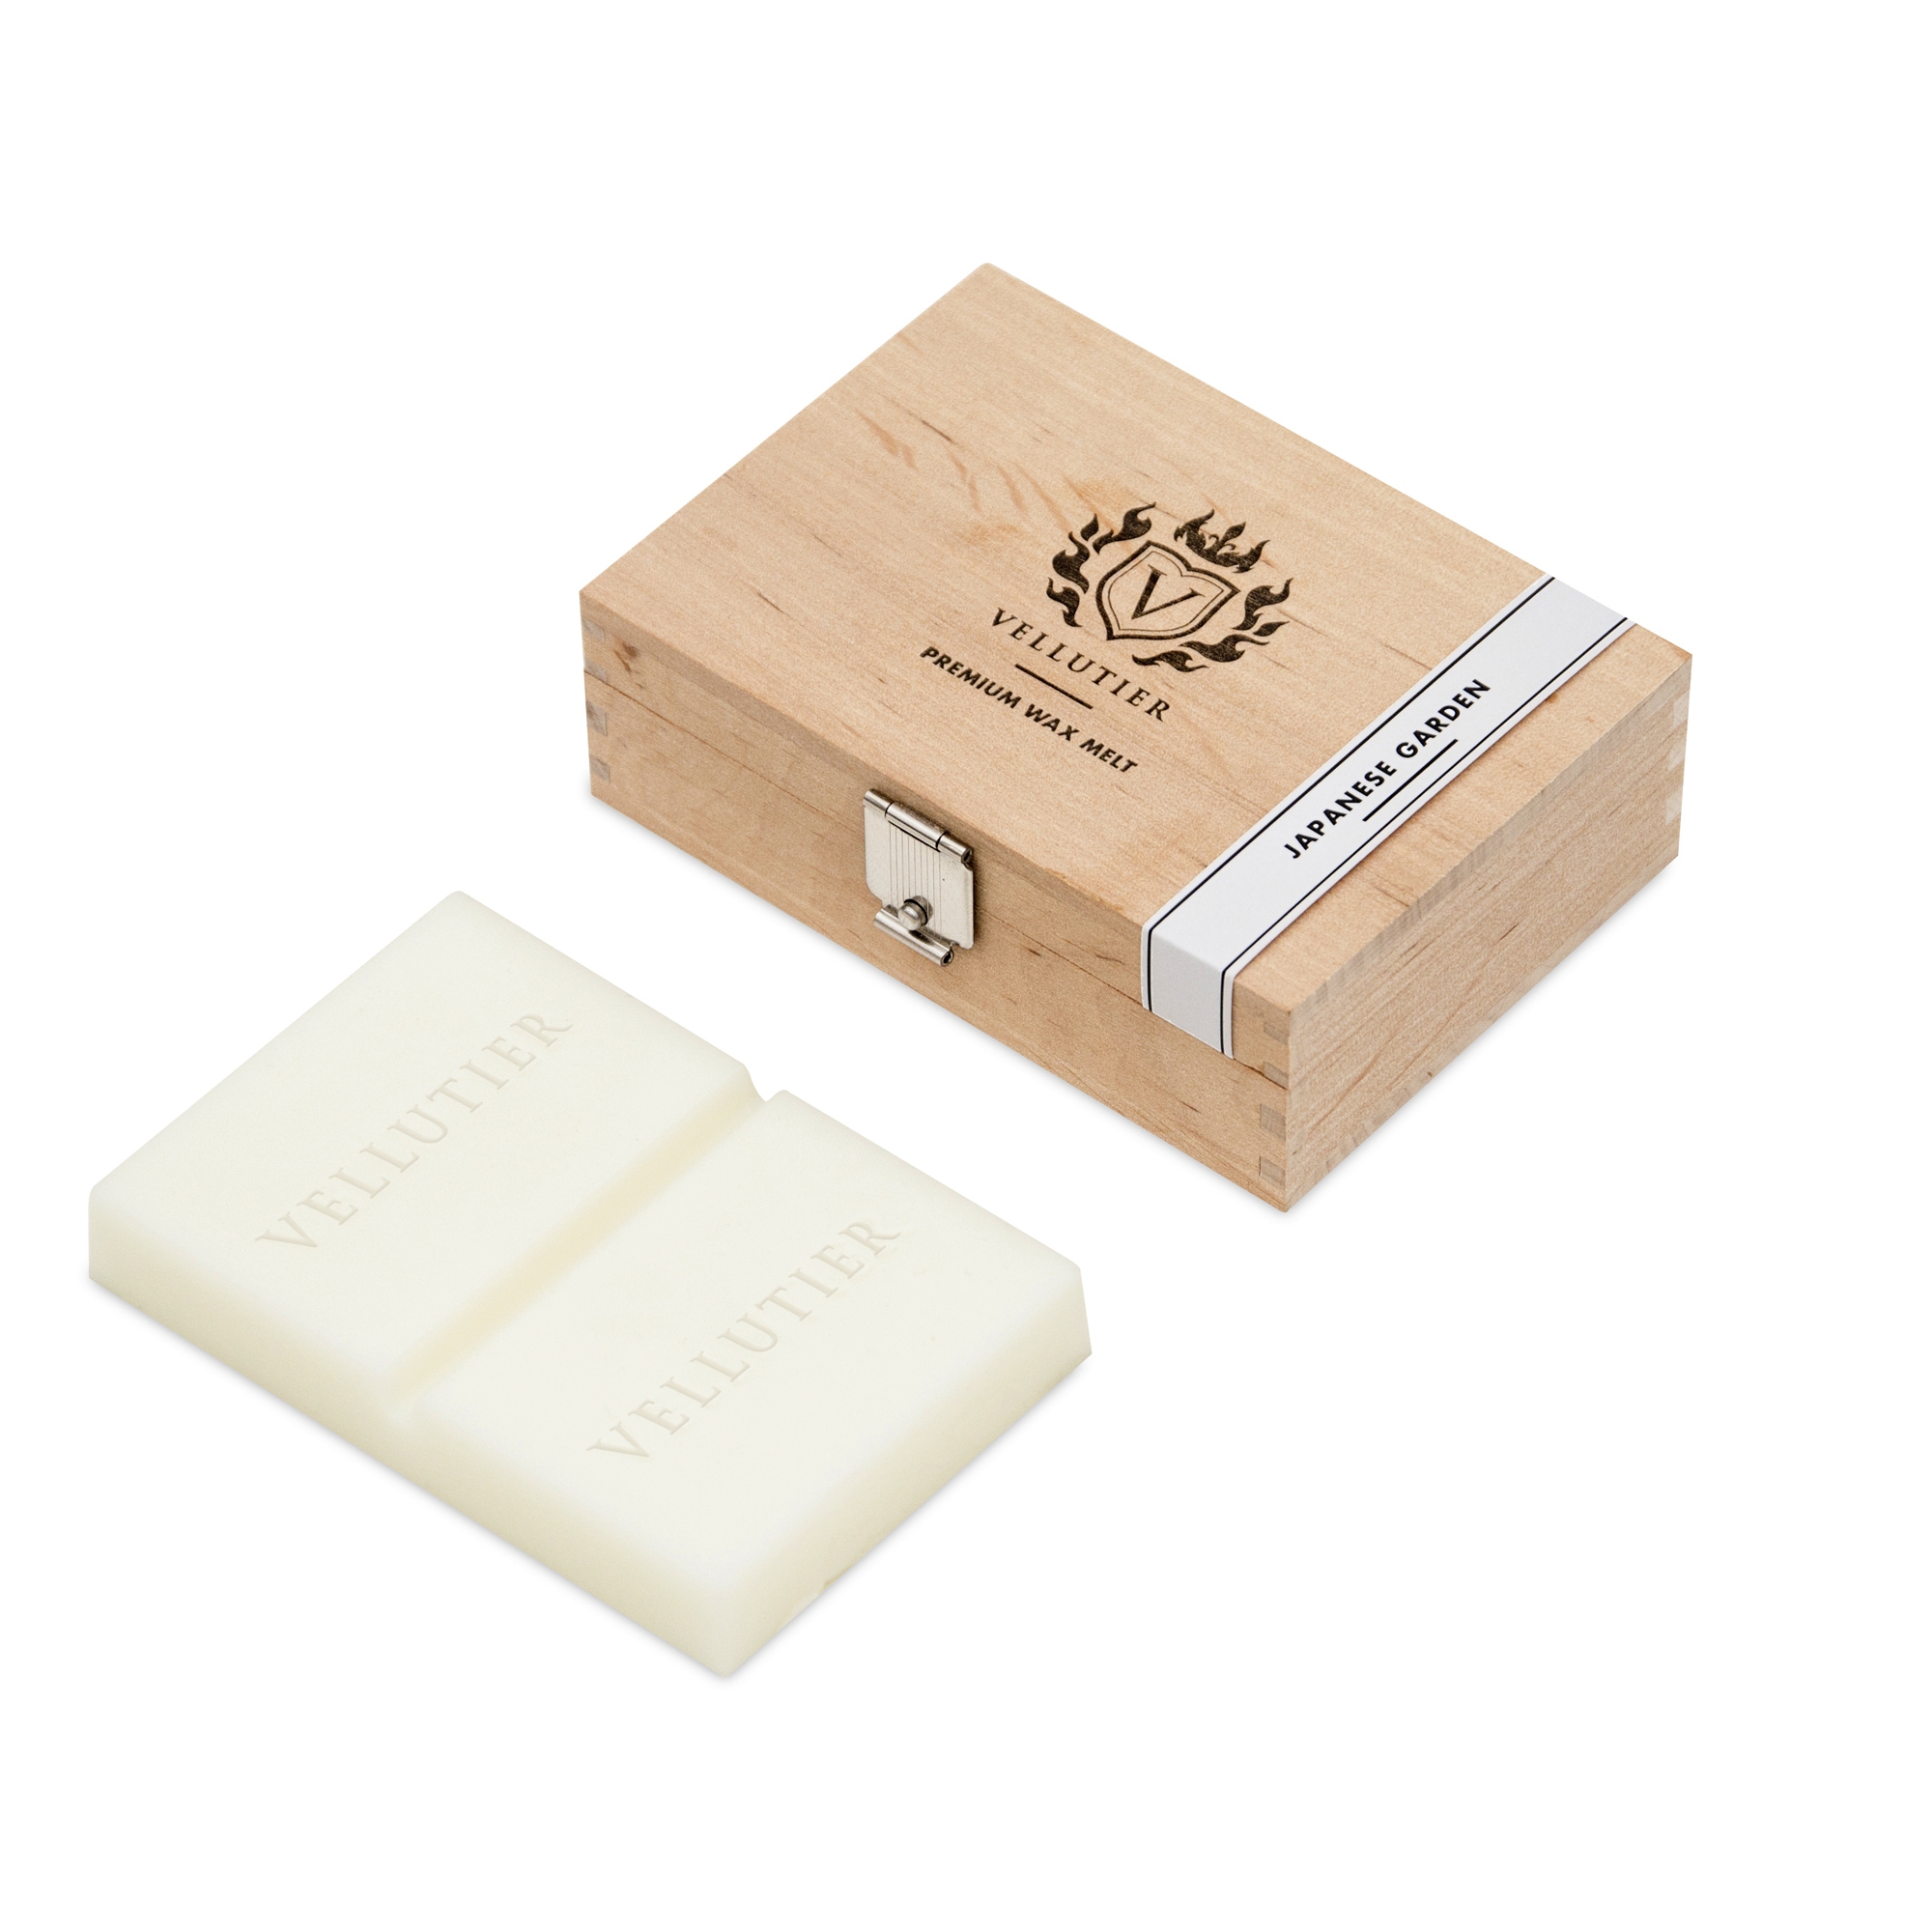 Japanese Garden Exklusiver Wax Melt 50g Holzbox